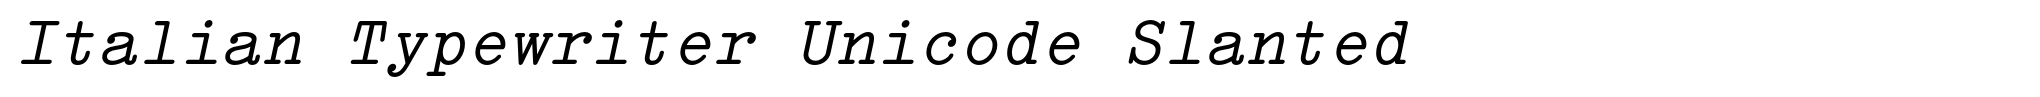 Italian Typewriter Unicode Slanted image